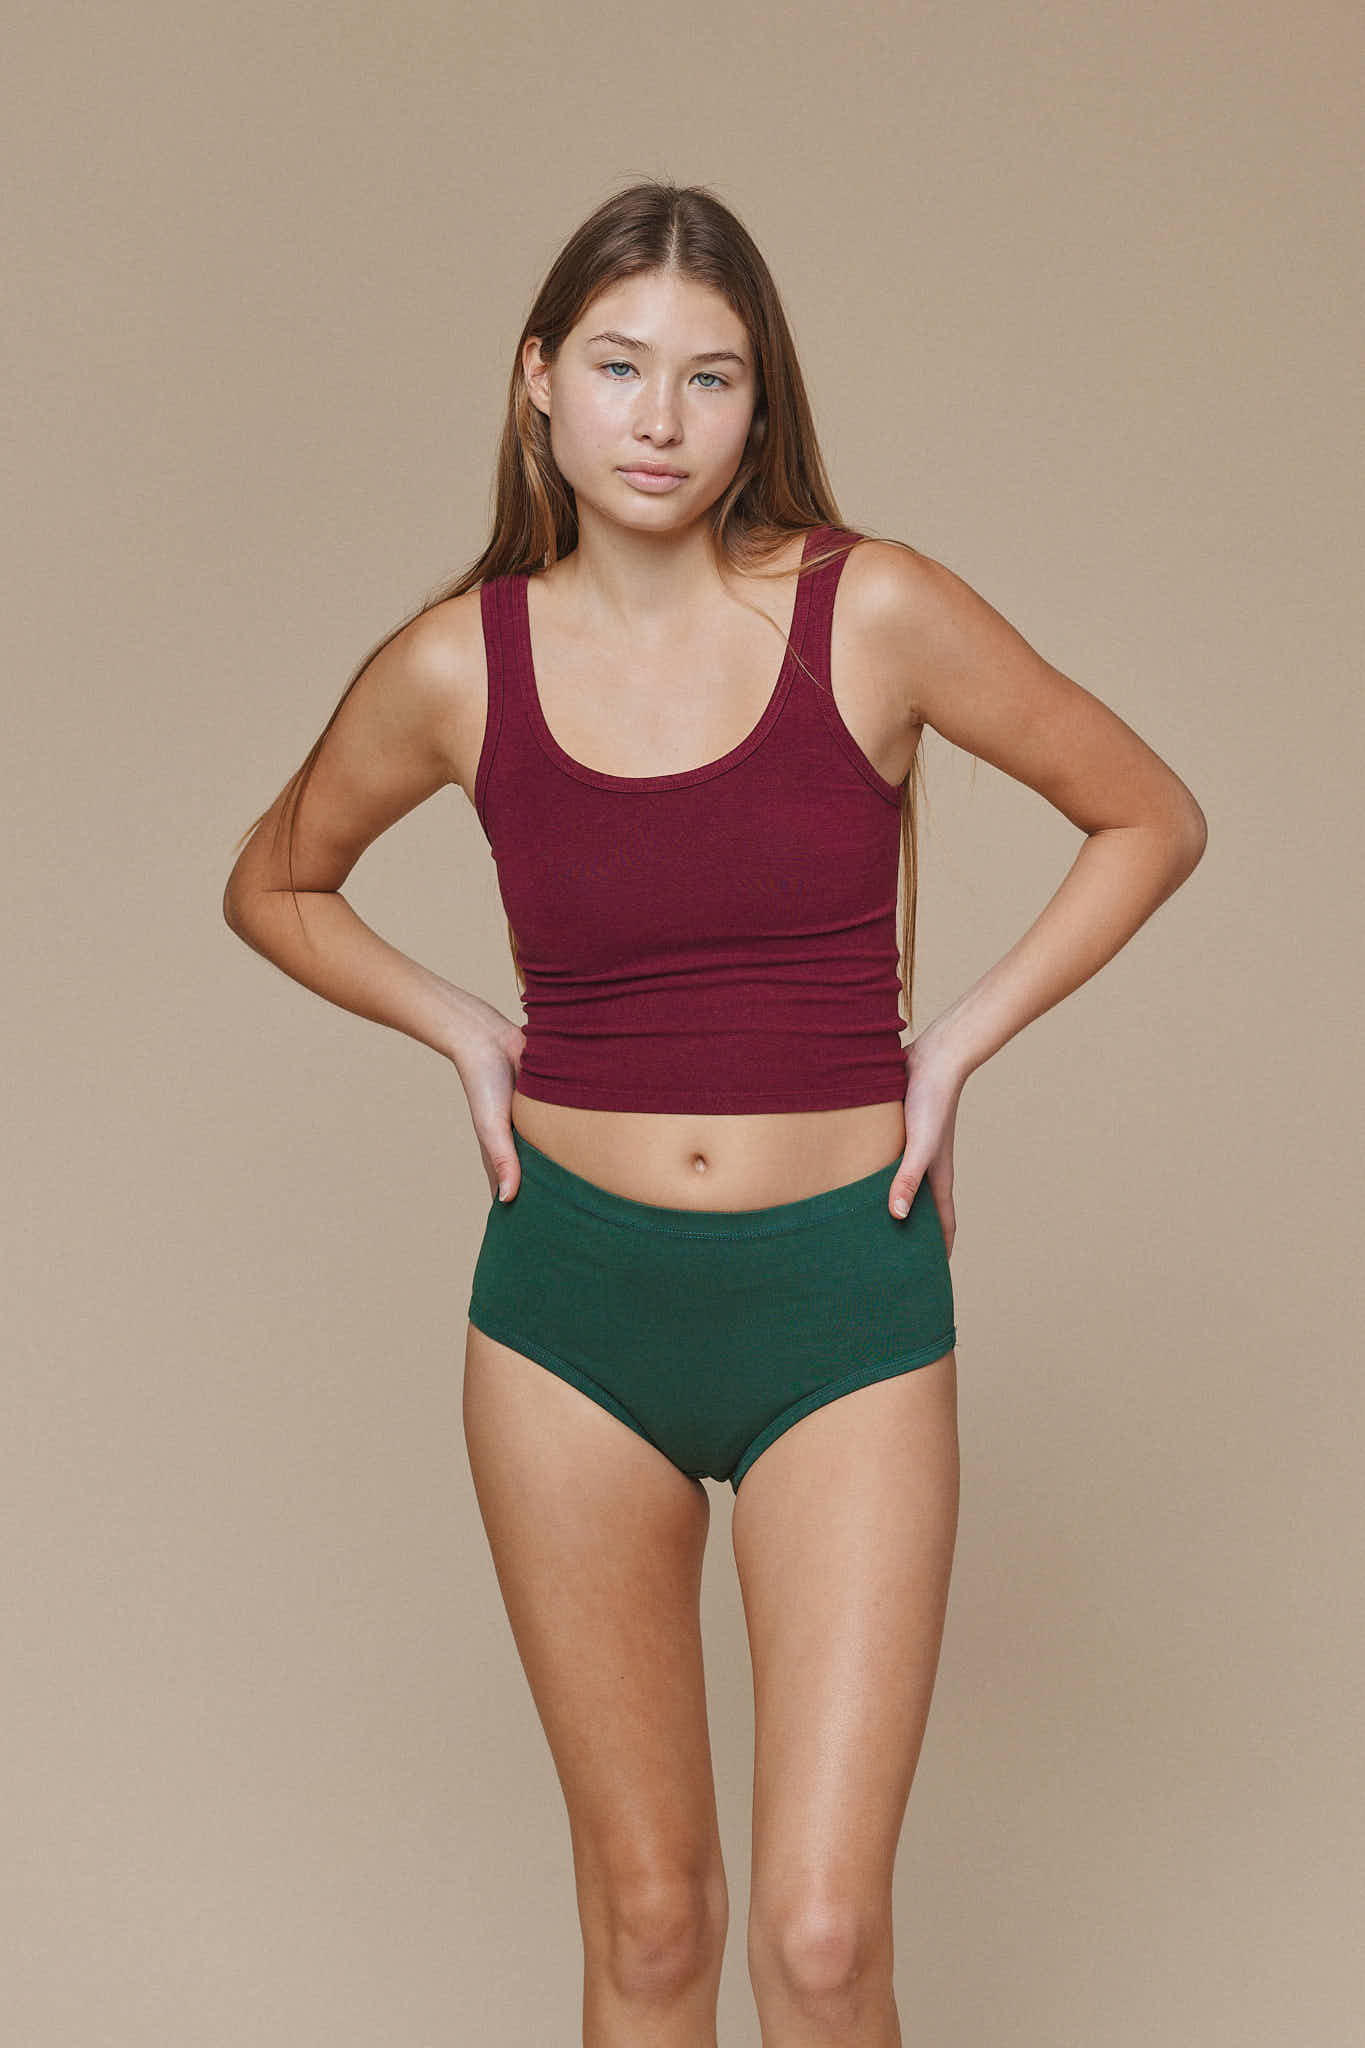 Bras for Teen Girls Kids Soft Underwear Girls Accessories